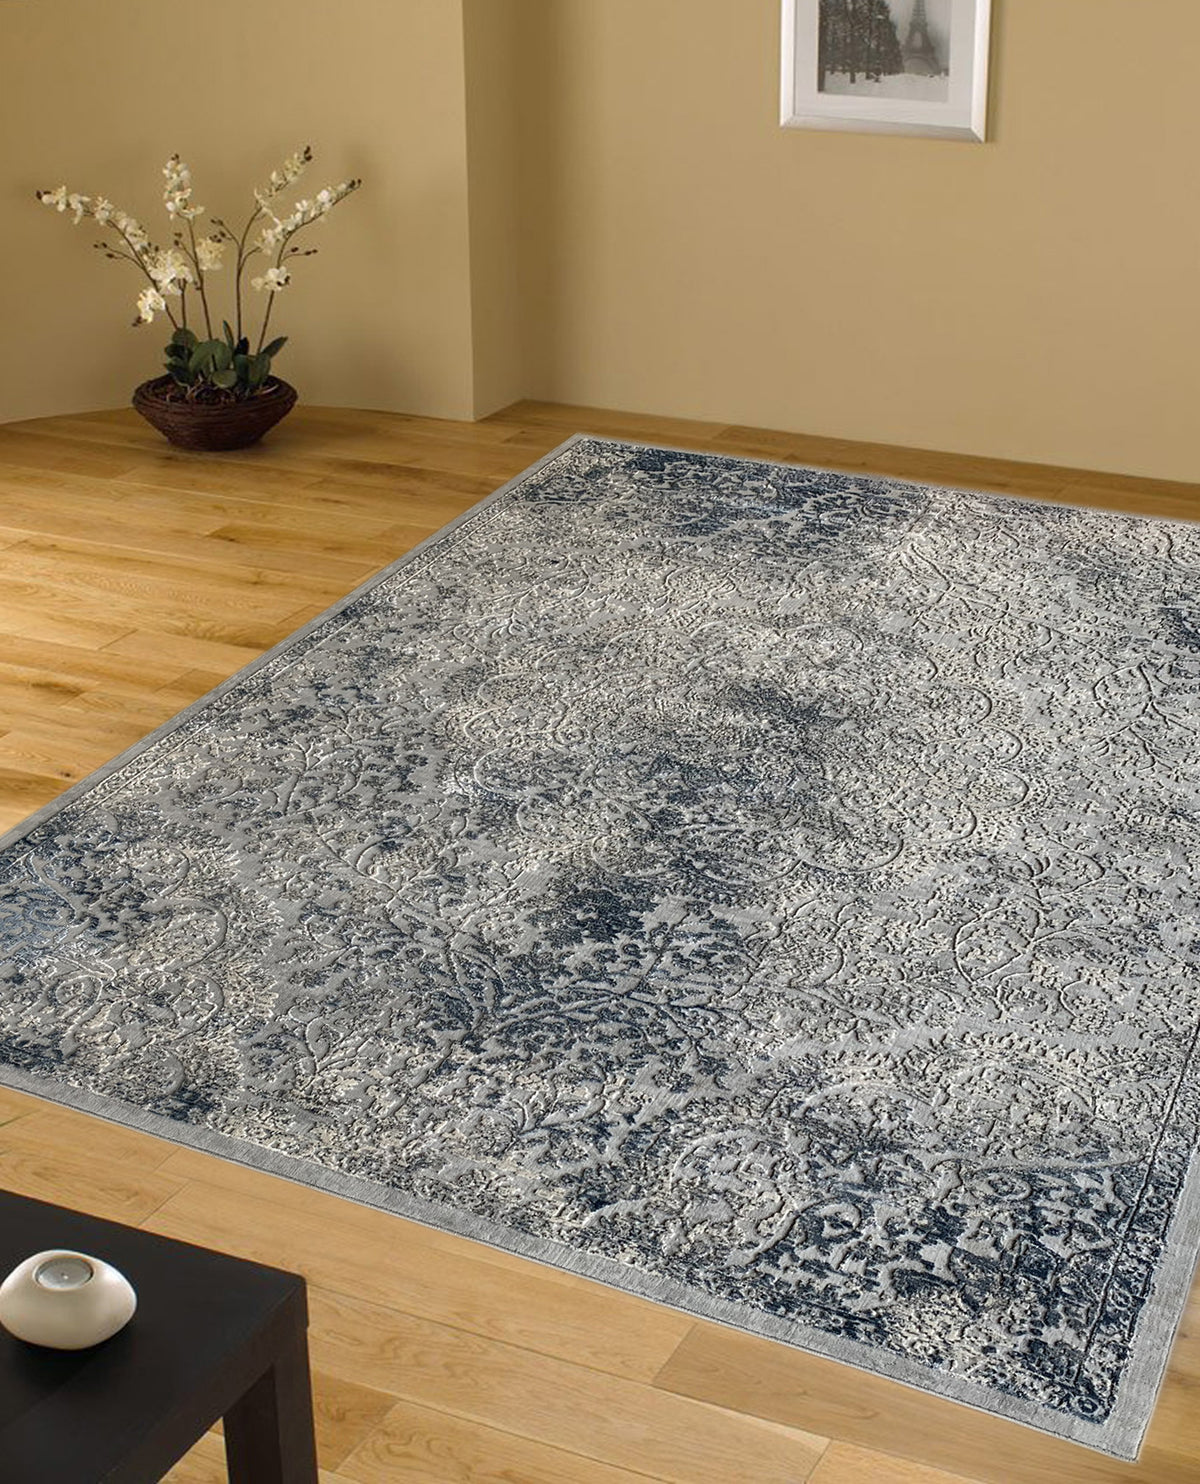 Rugslane Blue Floral Wool & Viscose Carpet 8ft X 10ft